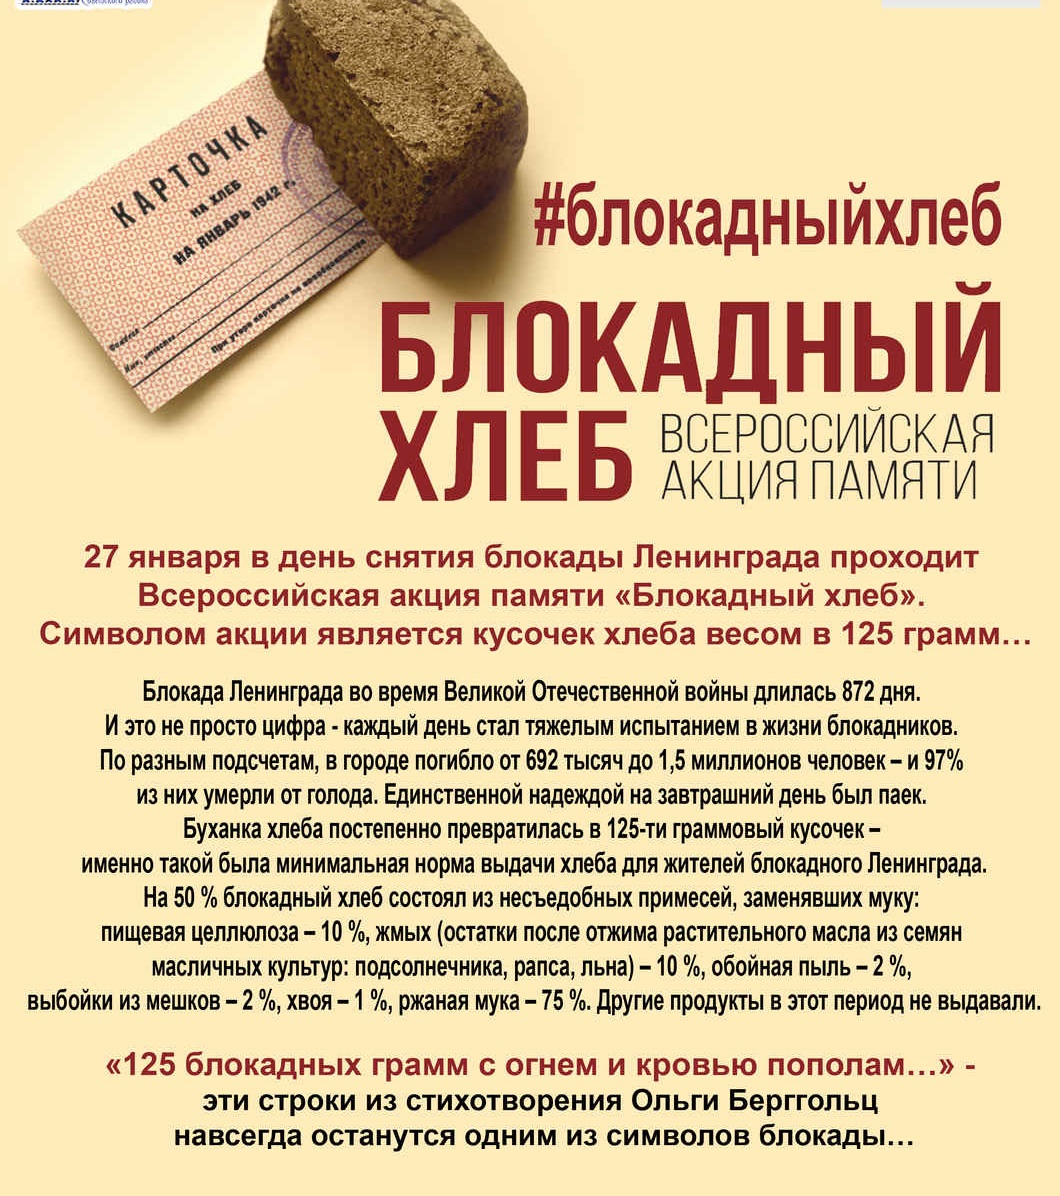 Акция блокадный хлеб Ленинграда 2021